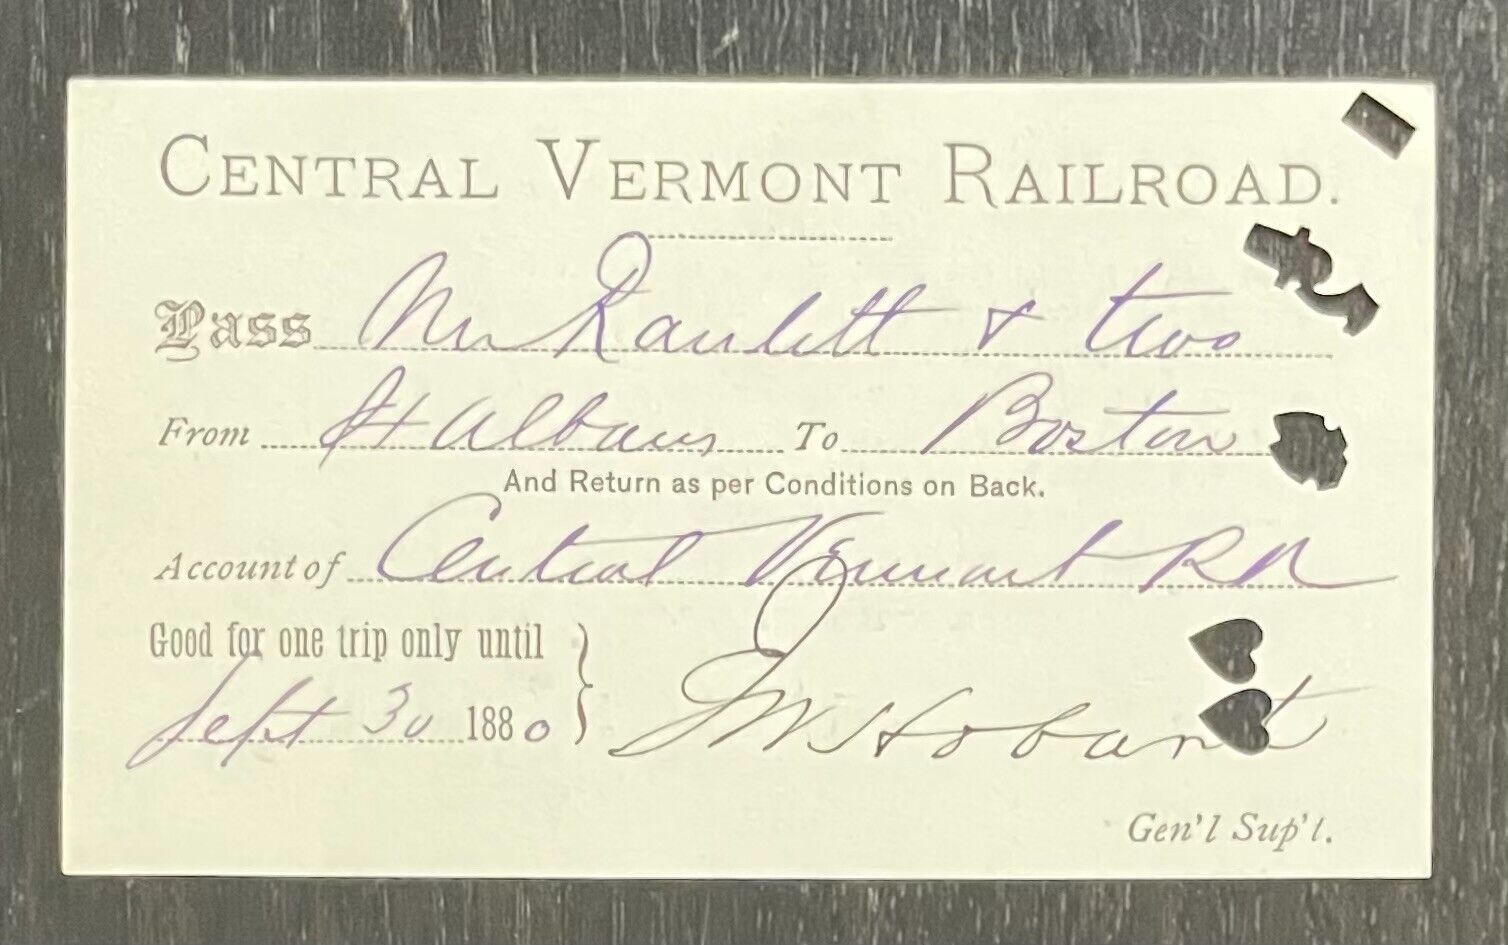 1880 CENTRAL VERMONT RAILROAD PASS FOR S. A. RANLETT, LIEUT. 36th REG MASS VOL's